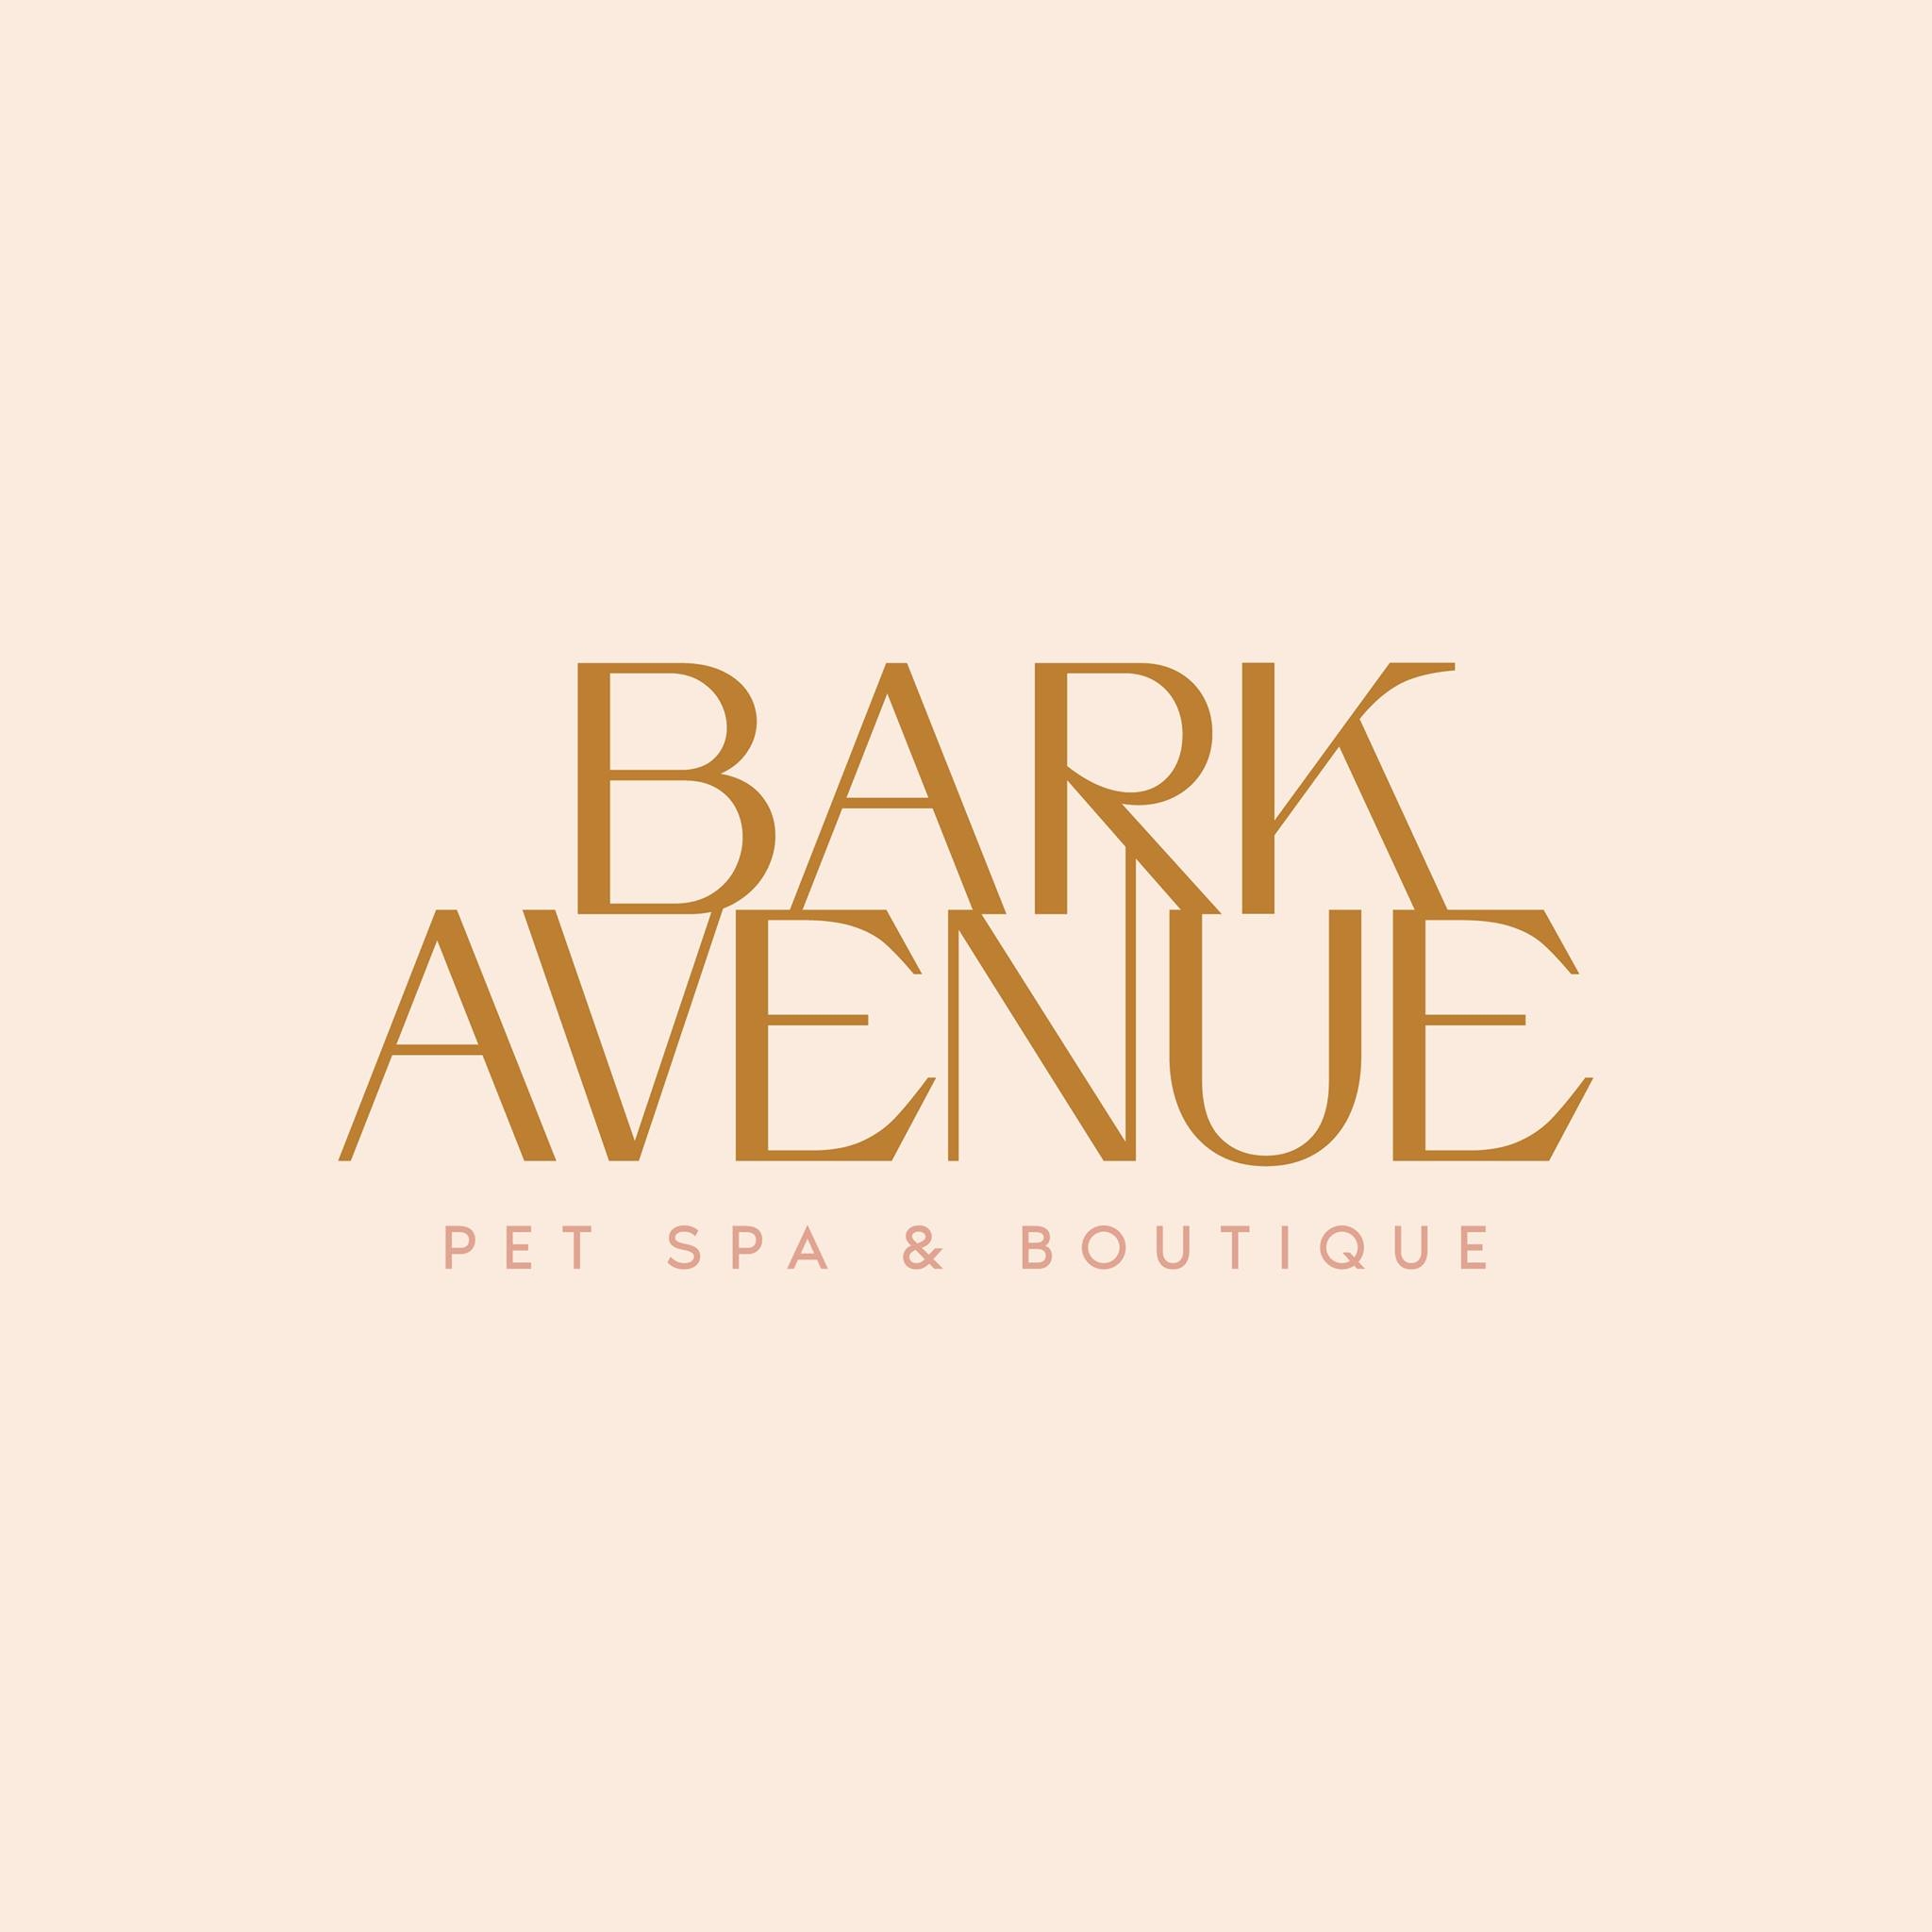 Company logo of Bark Avenue